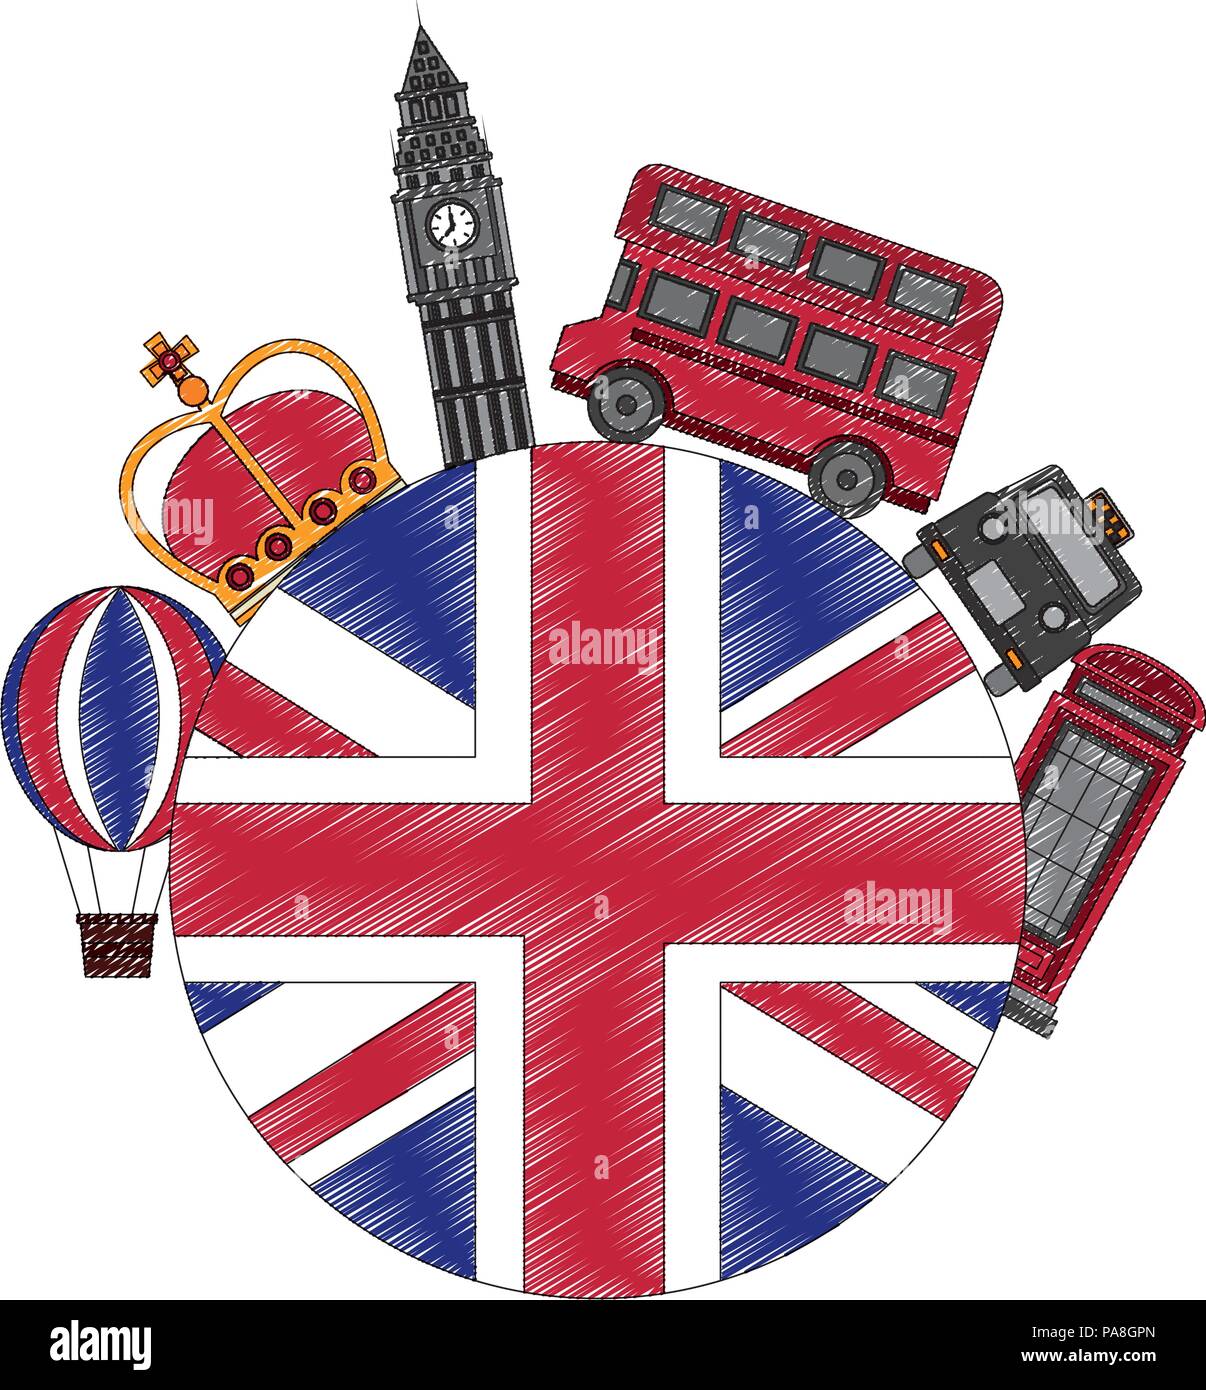 Pavillon britannique big ben taxi bus stand et couronne téléphone Illustration de Vecteur